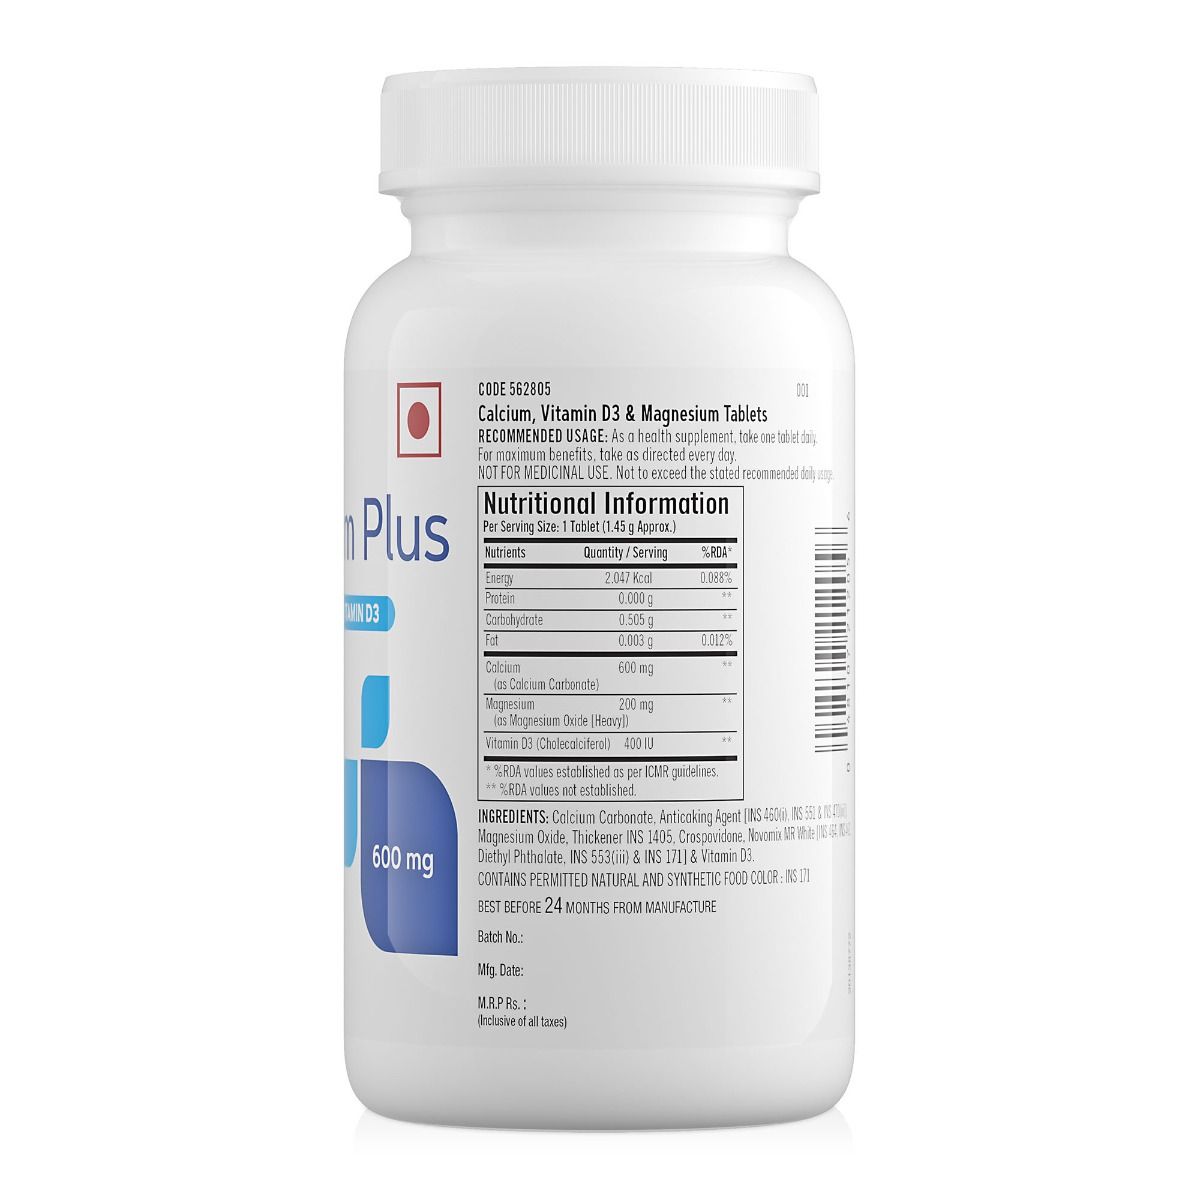 GNC Calcium Plus 600 mg with Magnesium and Vitamin D3 - 